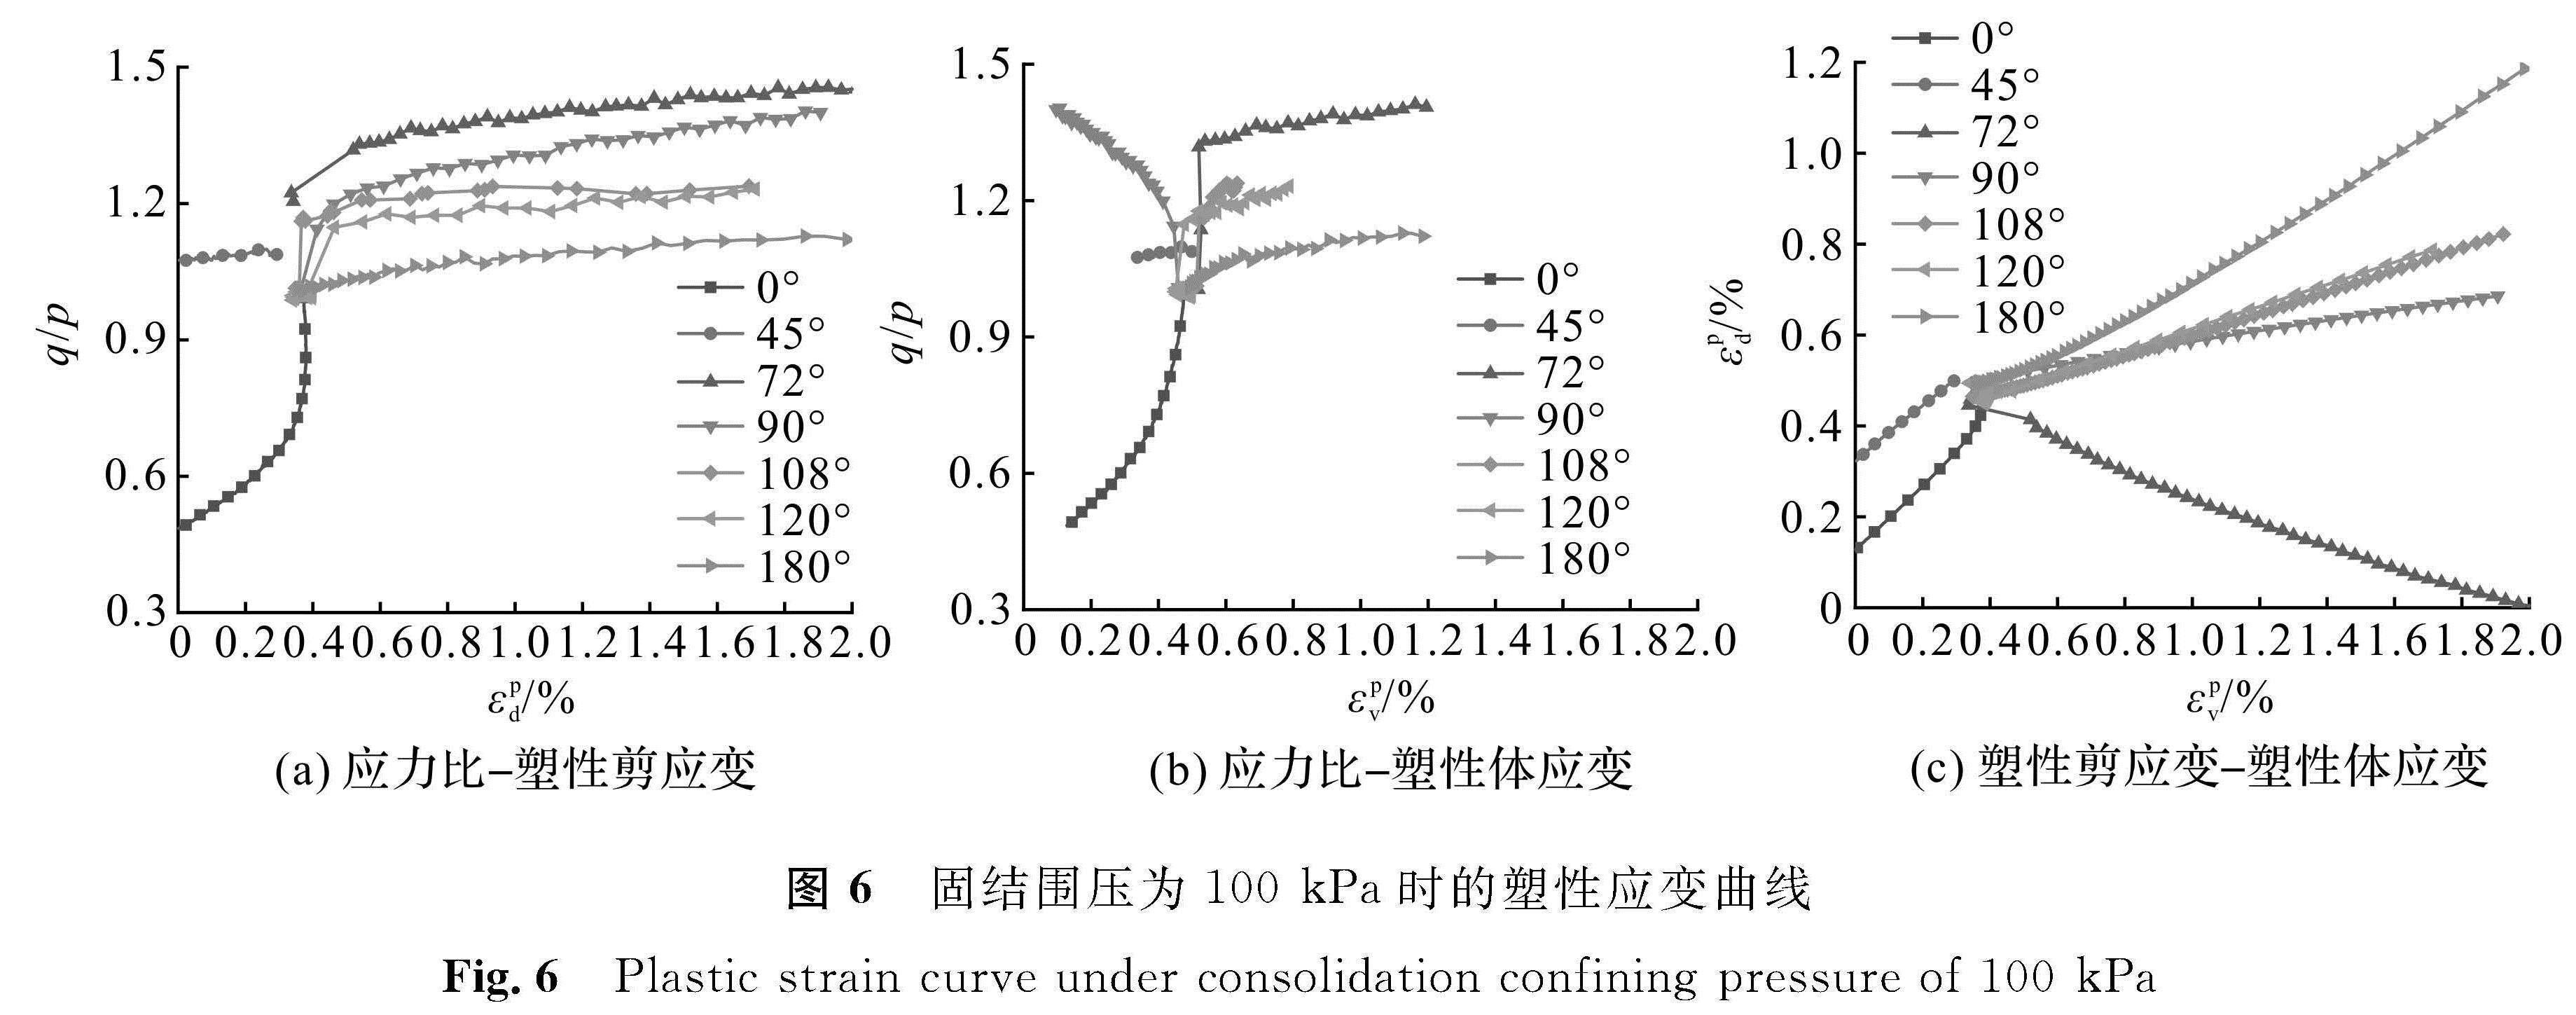 图6 固结围压为100 kPa时的塑性应变曲线<br/>Fig.6 Plastic strain curve under consolidation confining pressure of 100 kPa